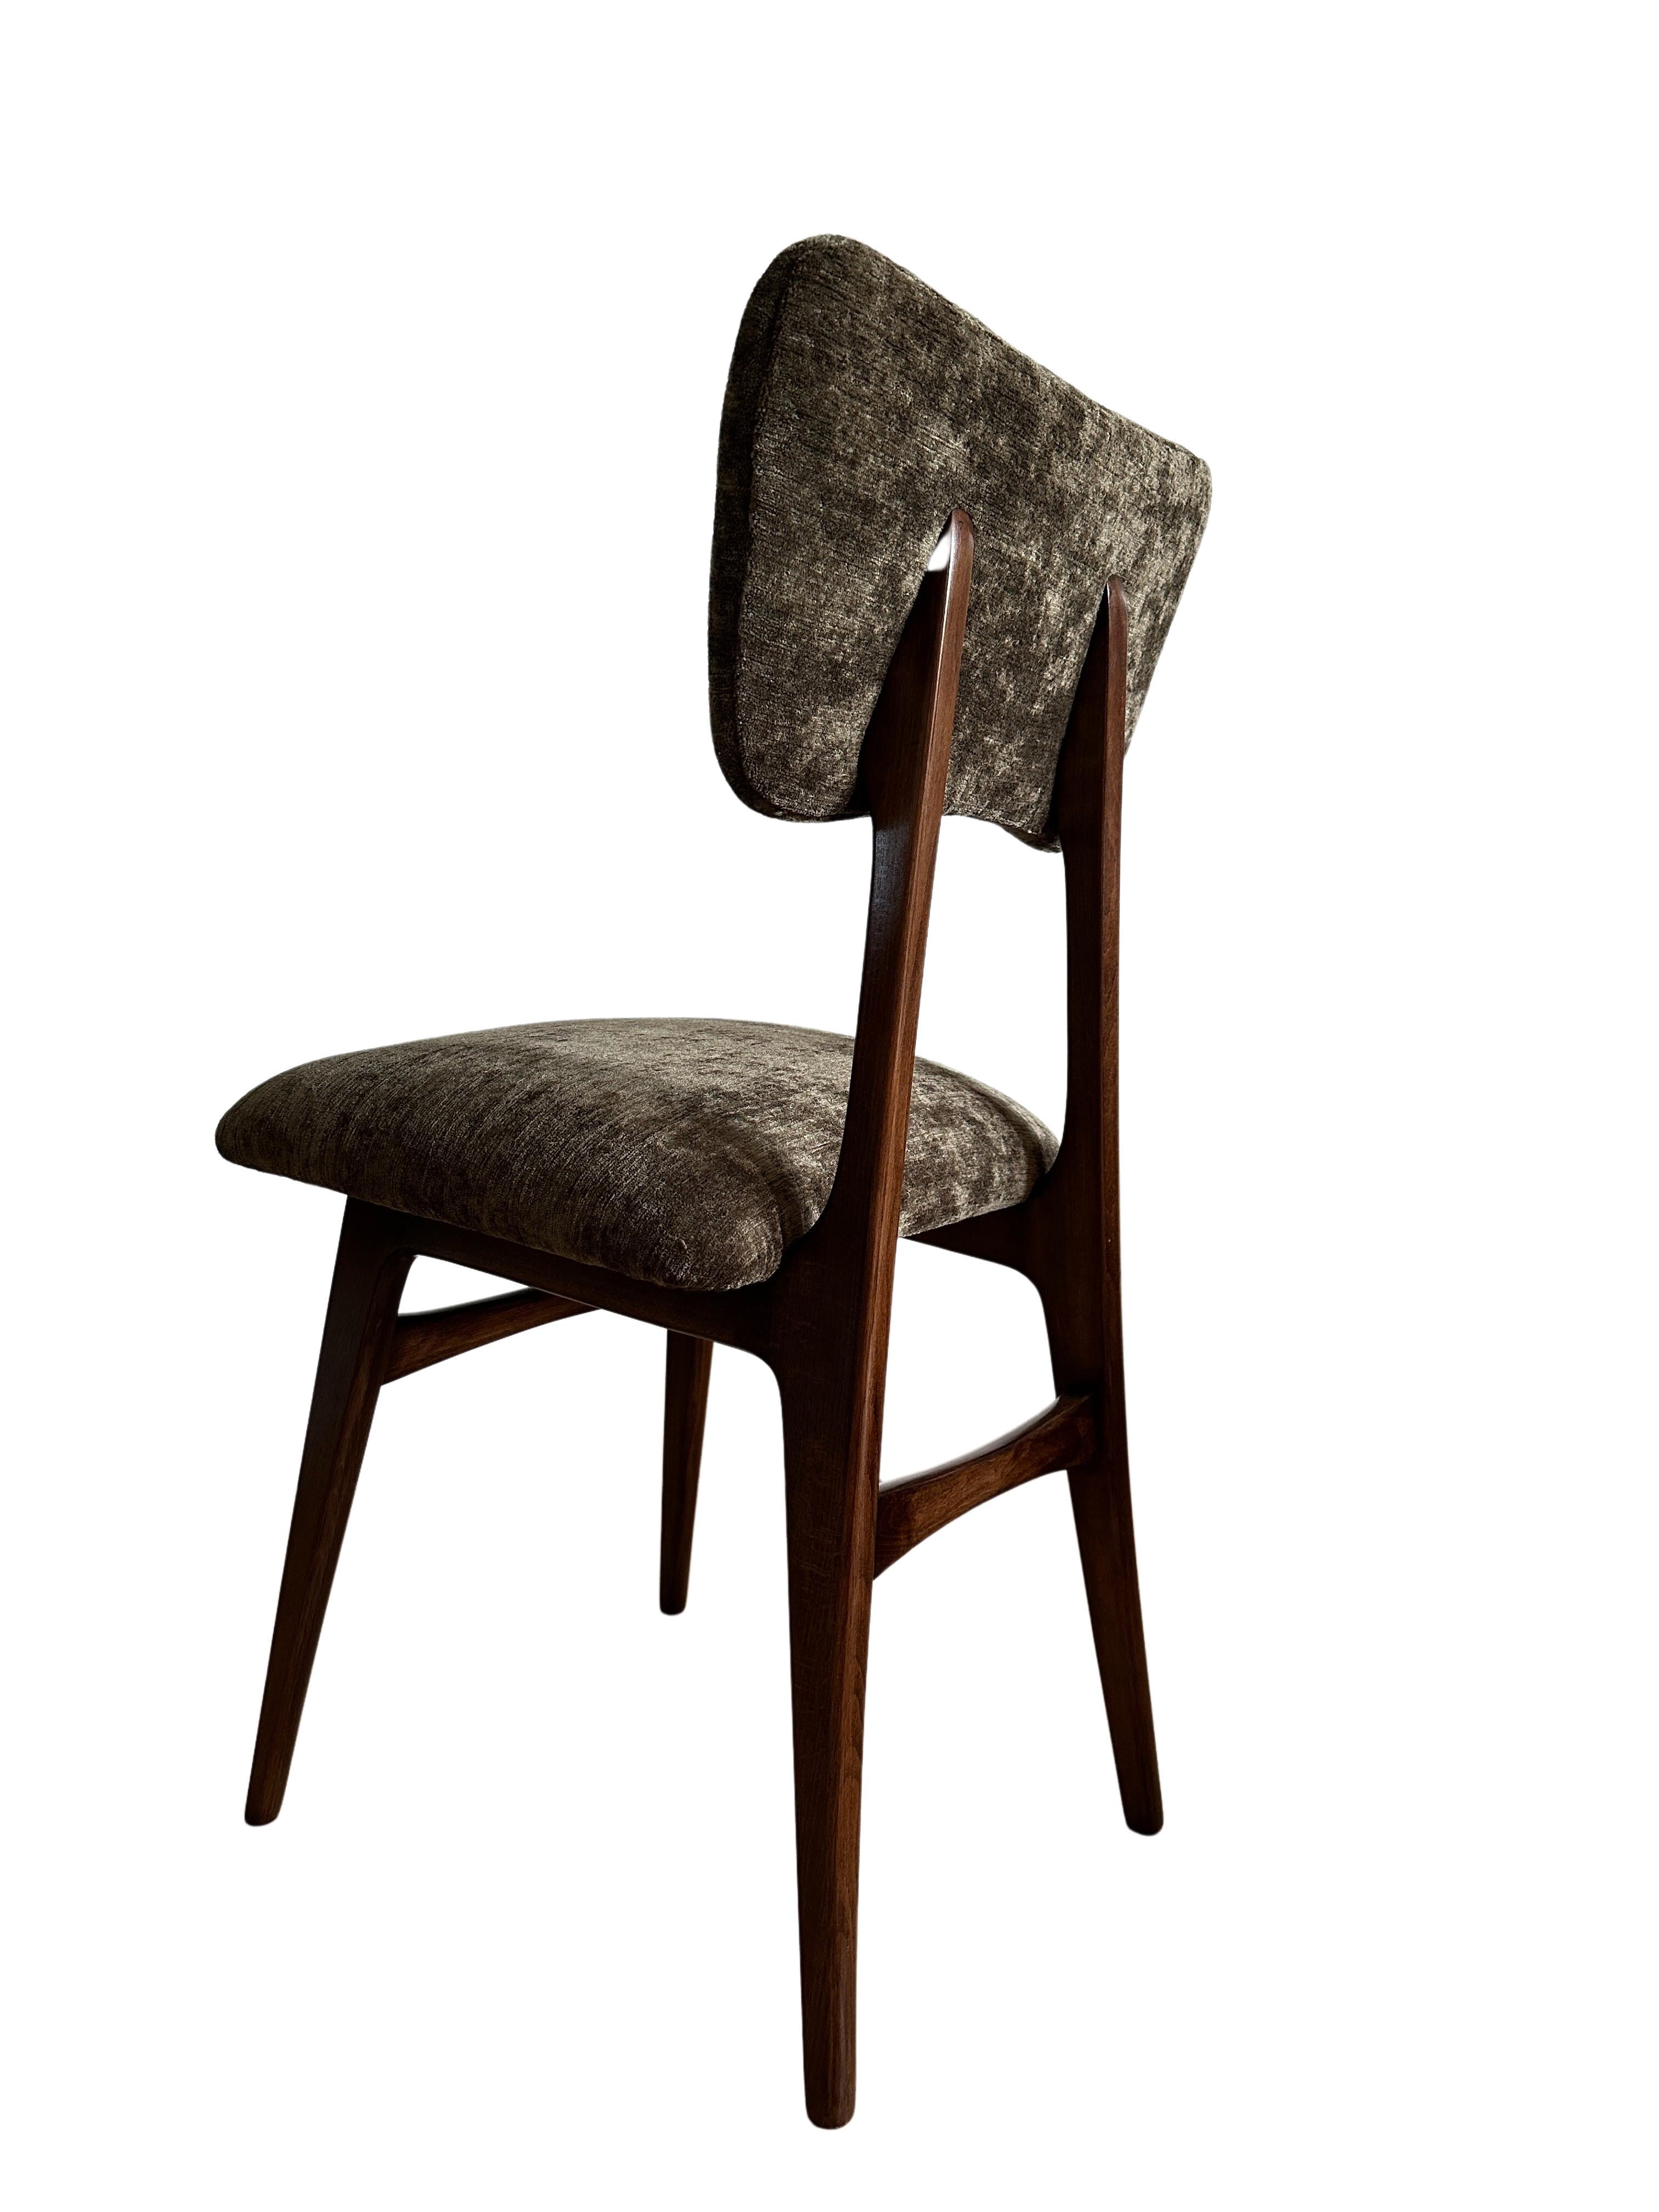 Einzigartiges Set aus vier Stühlen, die in den 1960er Jahren in Polen hergestellt wurden, entworfen von Rajmund Halas. 

Die Polsterung besteht aus dunkelgrünem Samtstoff, der die Farben der Natur widerspiegelt. Es ist ein weicher, feiner, gewebter